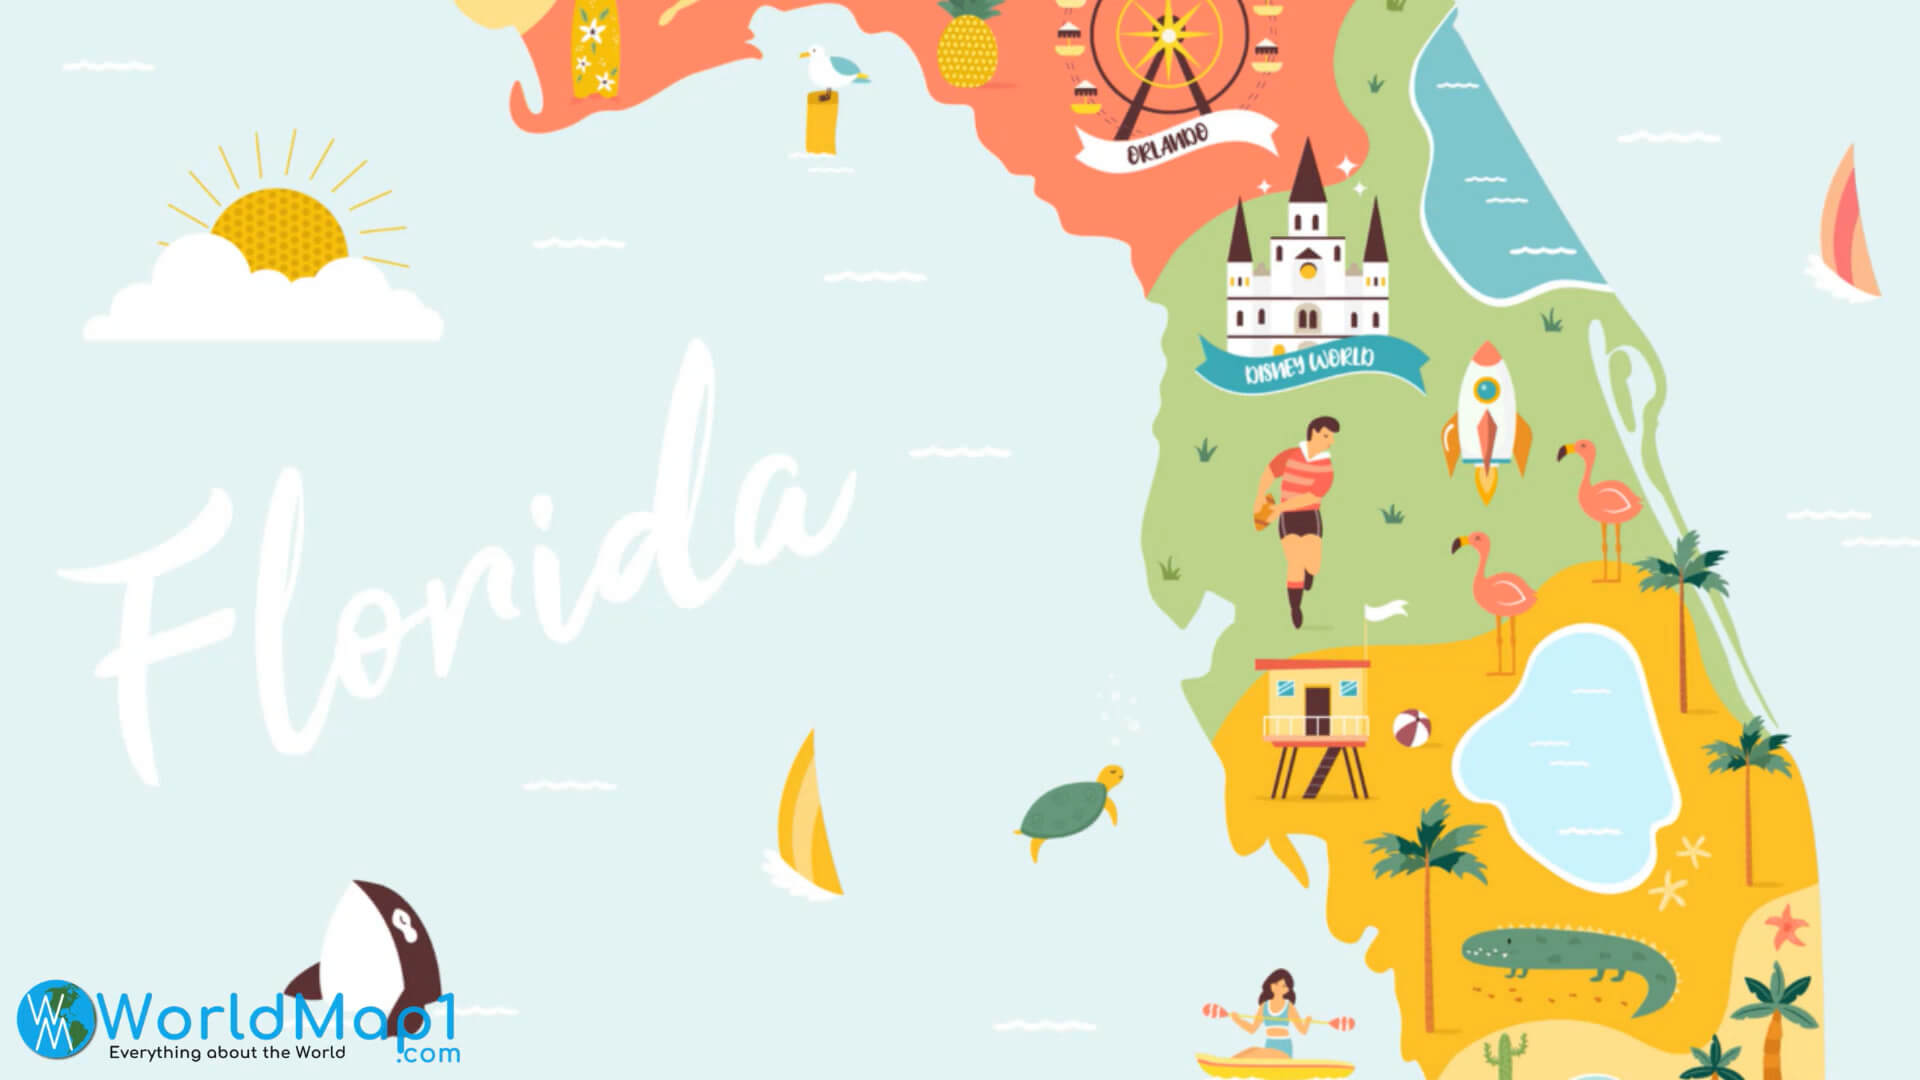 Tourism Map of Florida